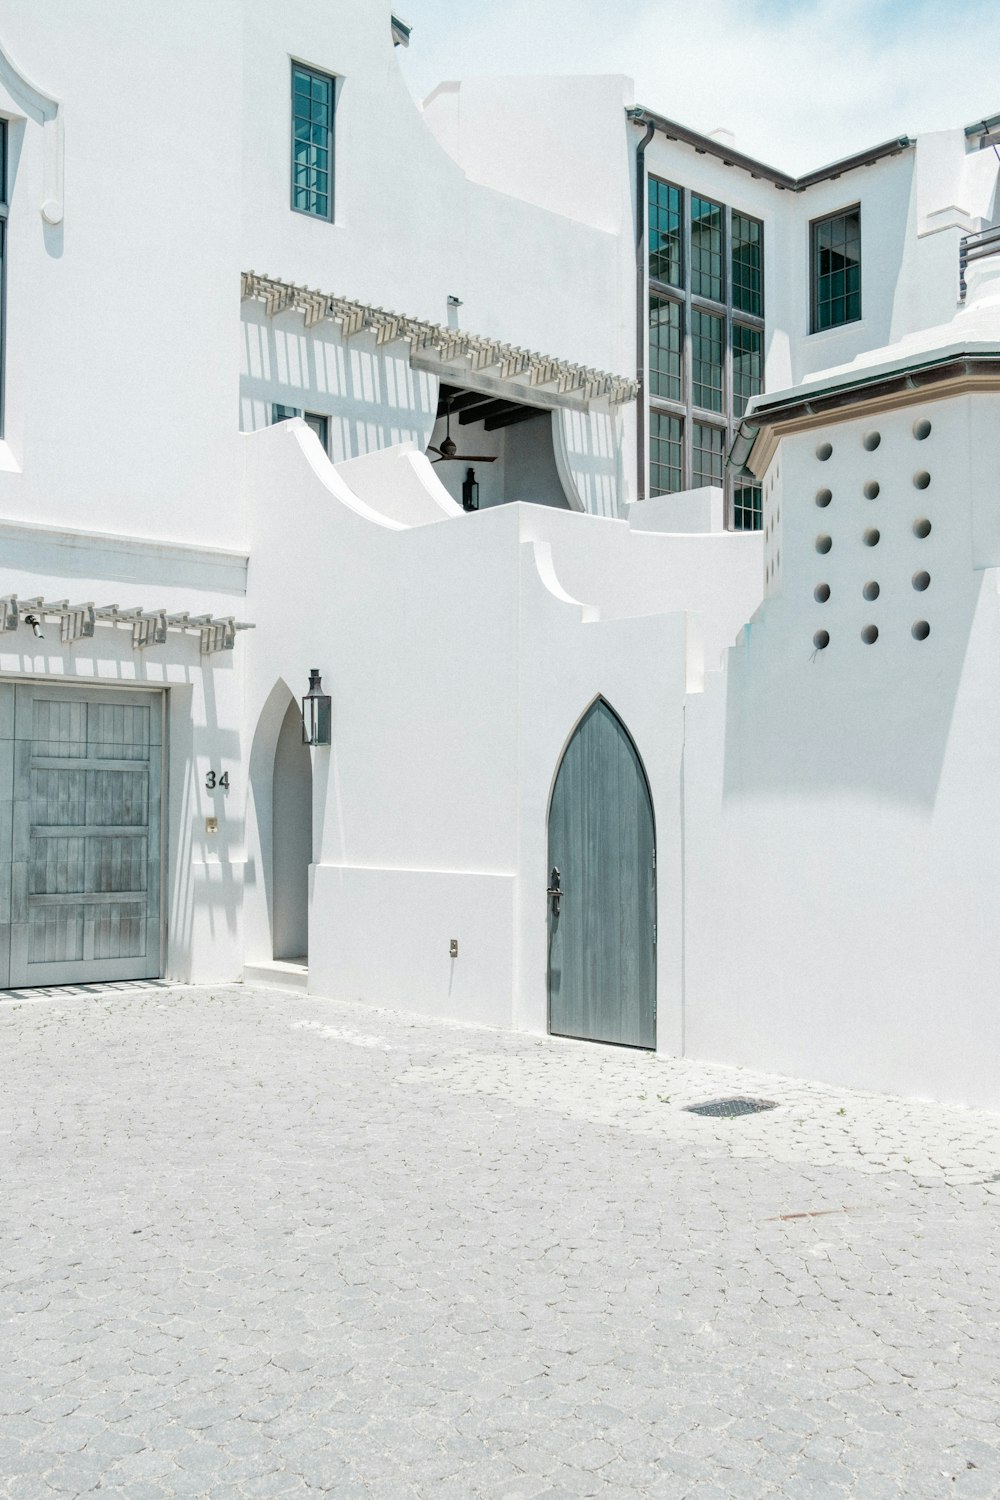 Maison en béton blanc